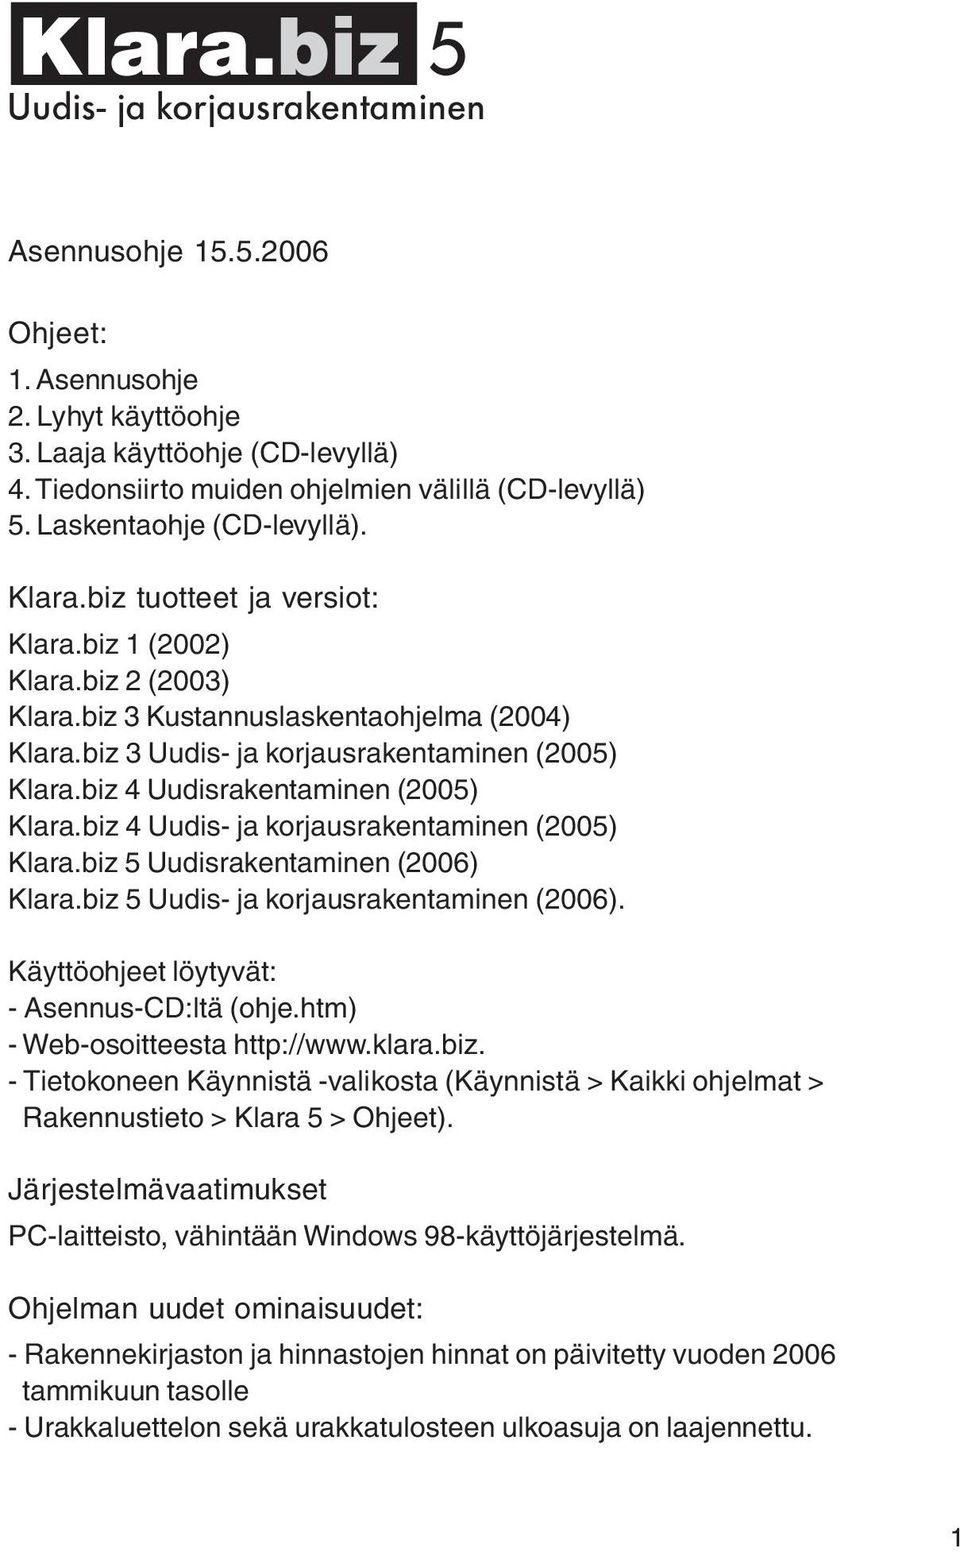 biz 4 Uudisrakentaminen (2005) Klara.biz 4 Uudis- ja korjausrakentaminen (2005) Klara.biz 5 Uudisrakentaminen (2006) Klara.biz 5 Uudis- ja korjausrakentaminen (2006).